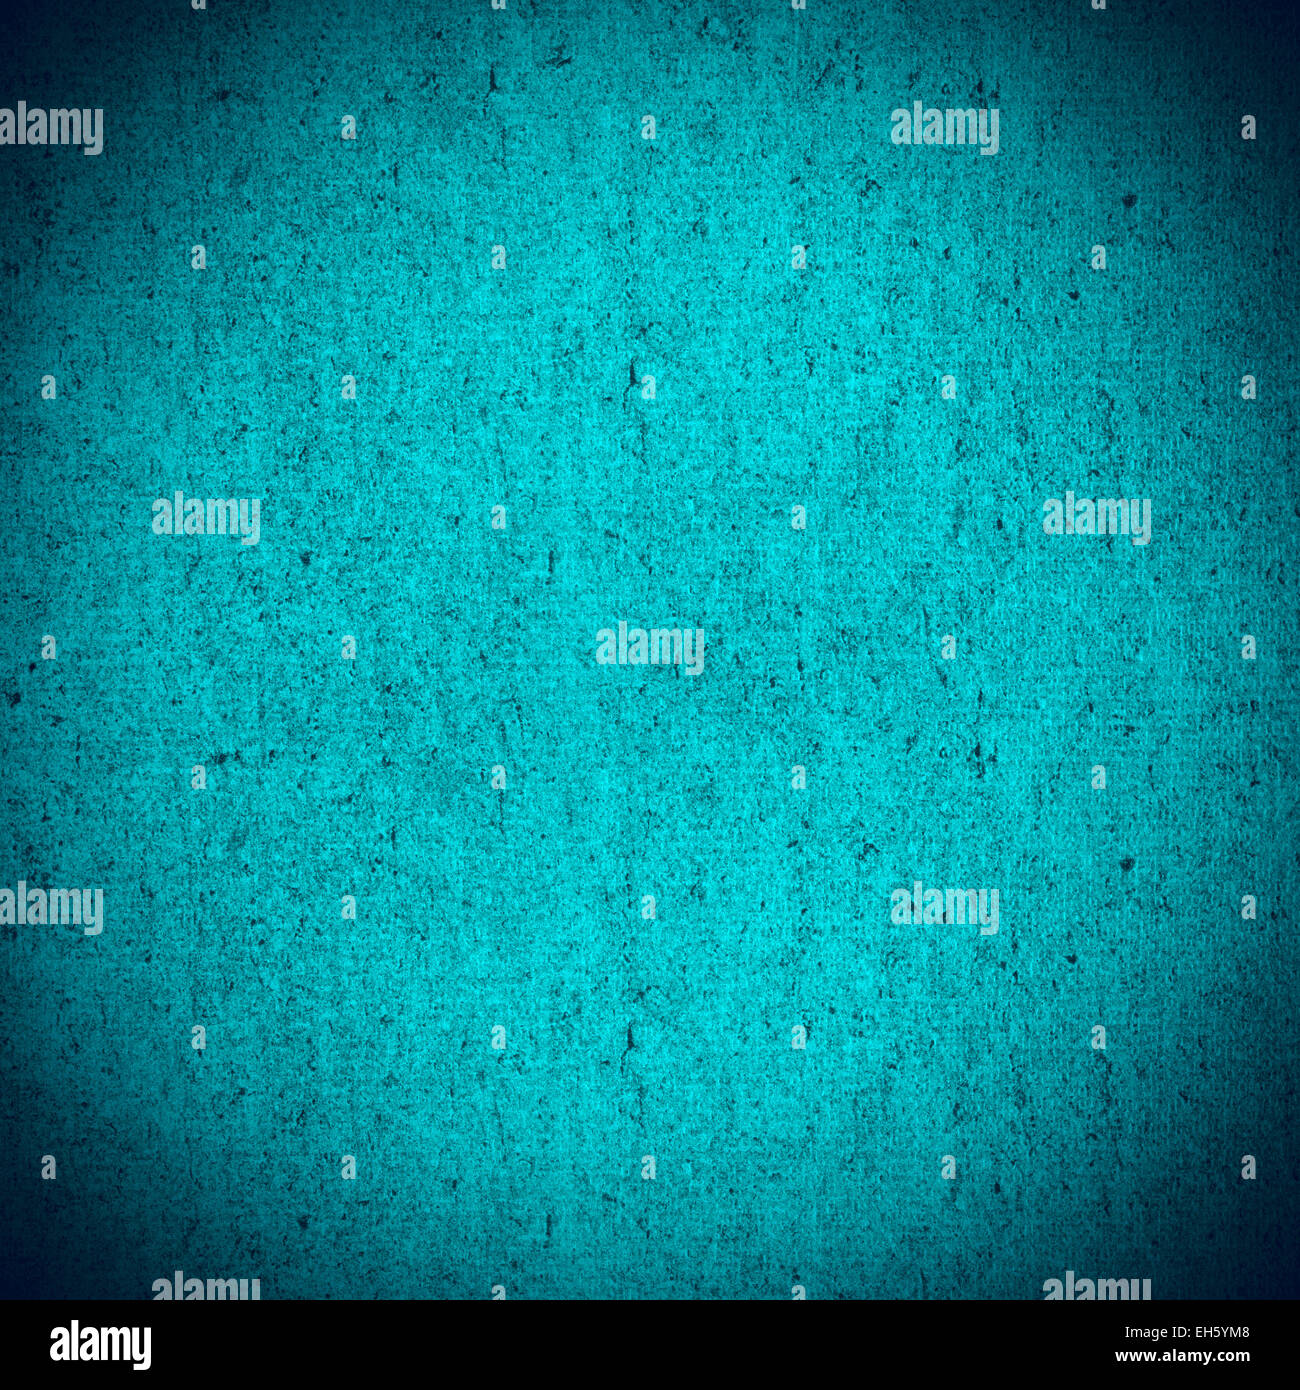 La texture ou motif rugueux turquoise abstract background Banque D'Images